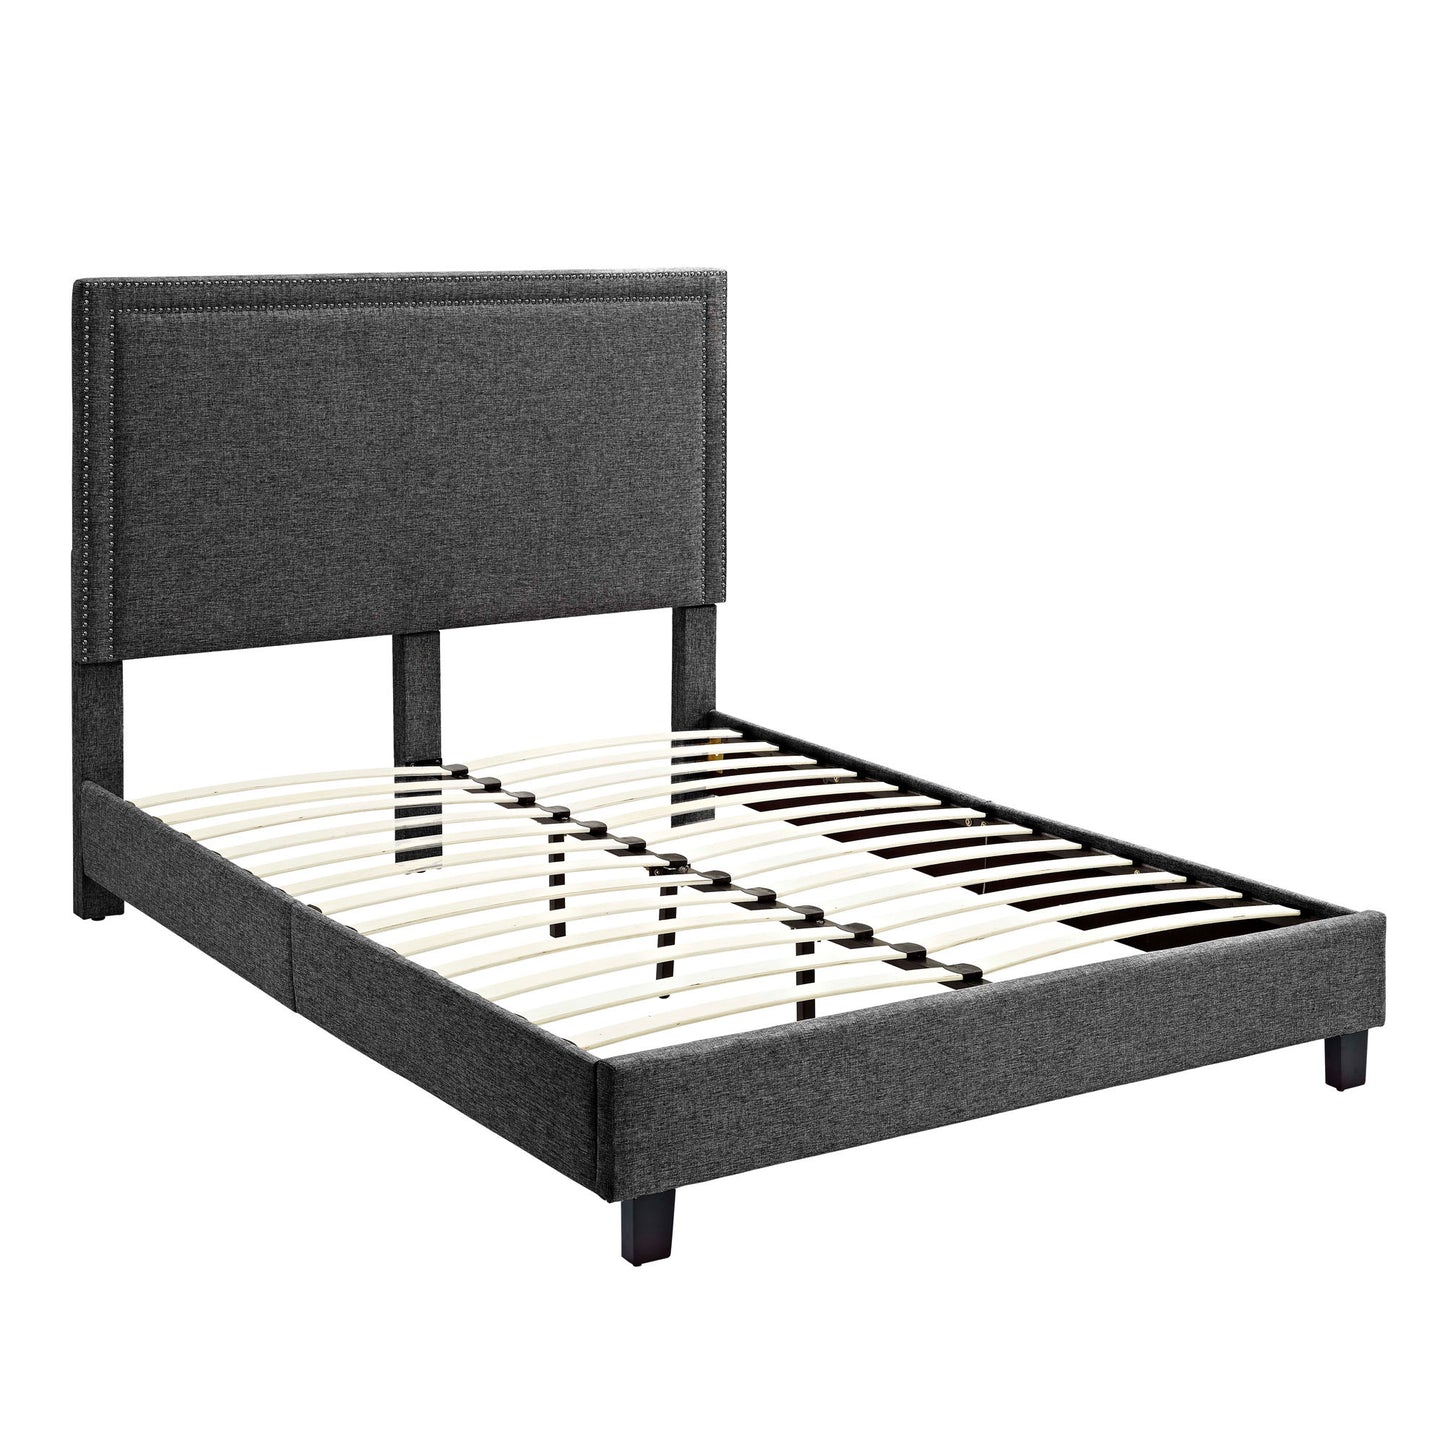 Erica - Upholstered Platform Bed